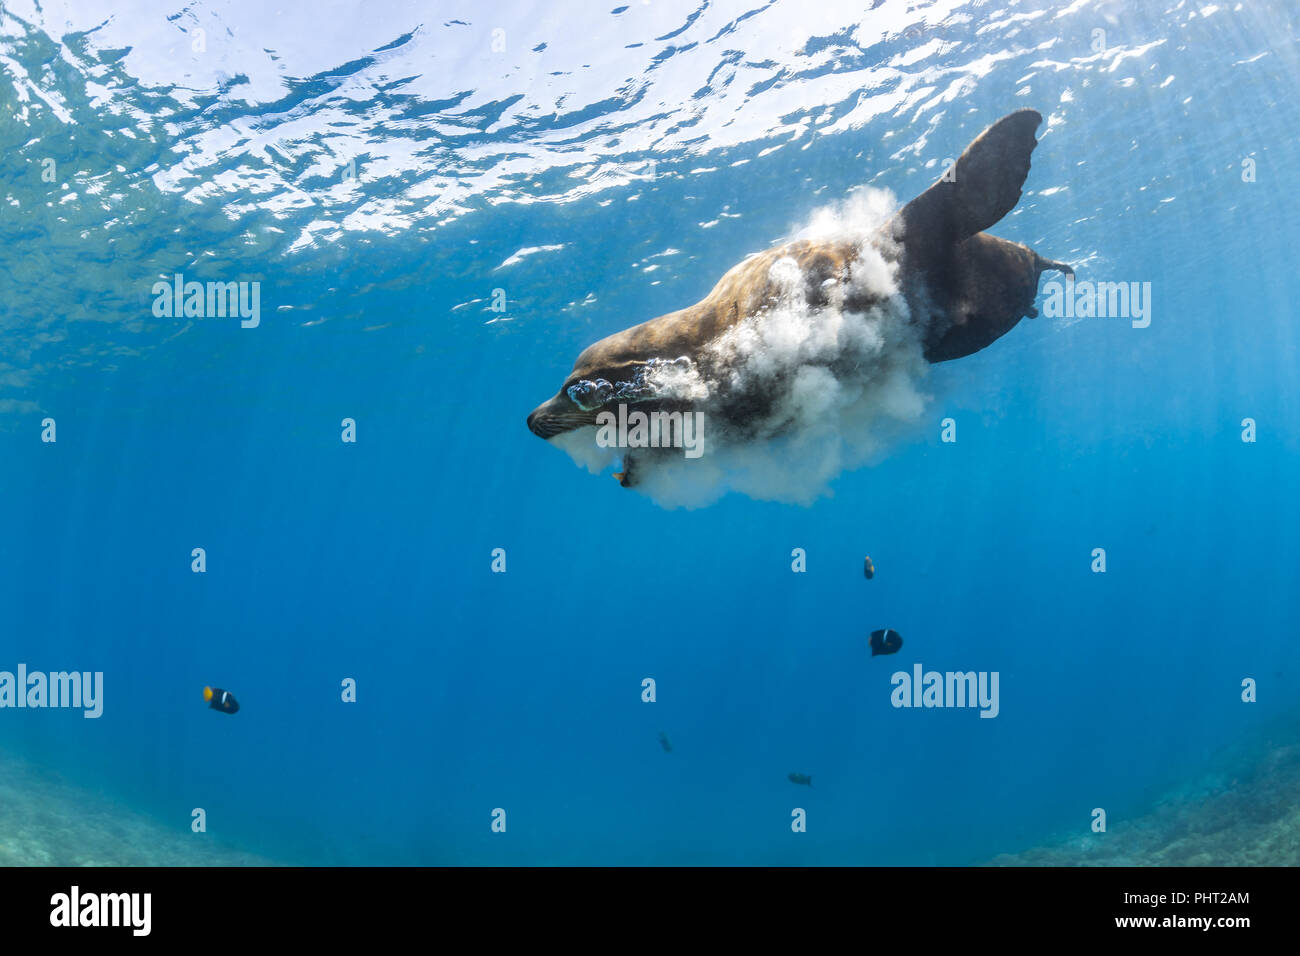 Brown California Sea Lion vomiting in the water, San Rafaelito, Sea of Cortez Stock Photo